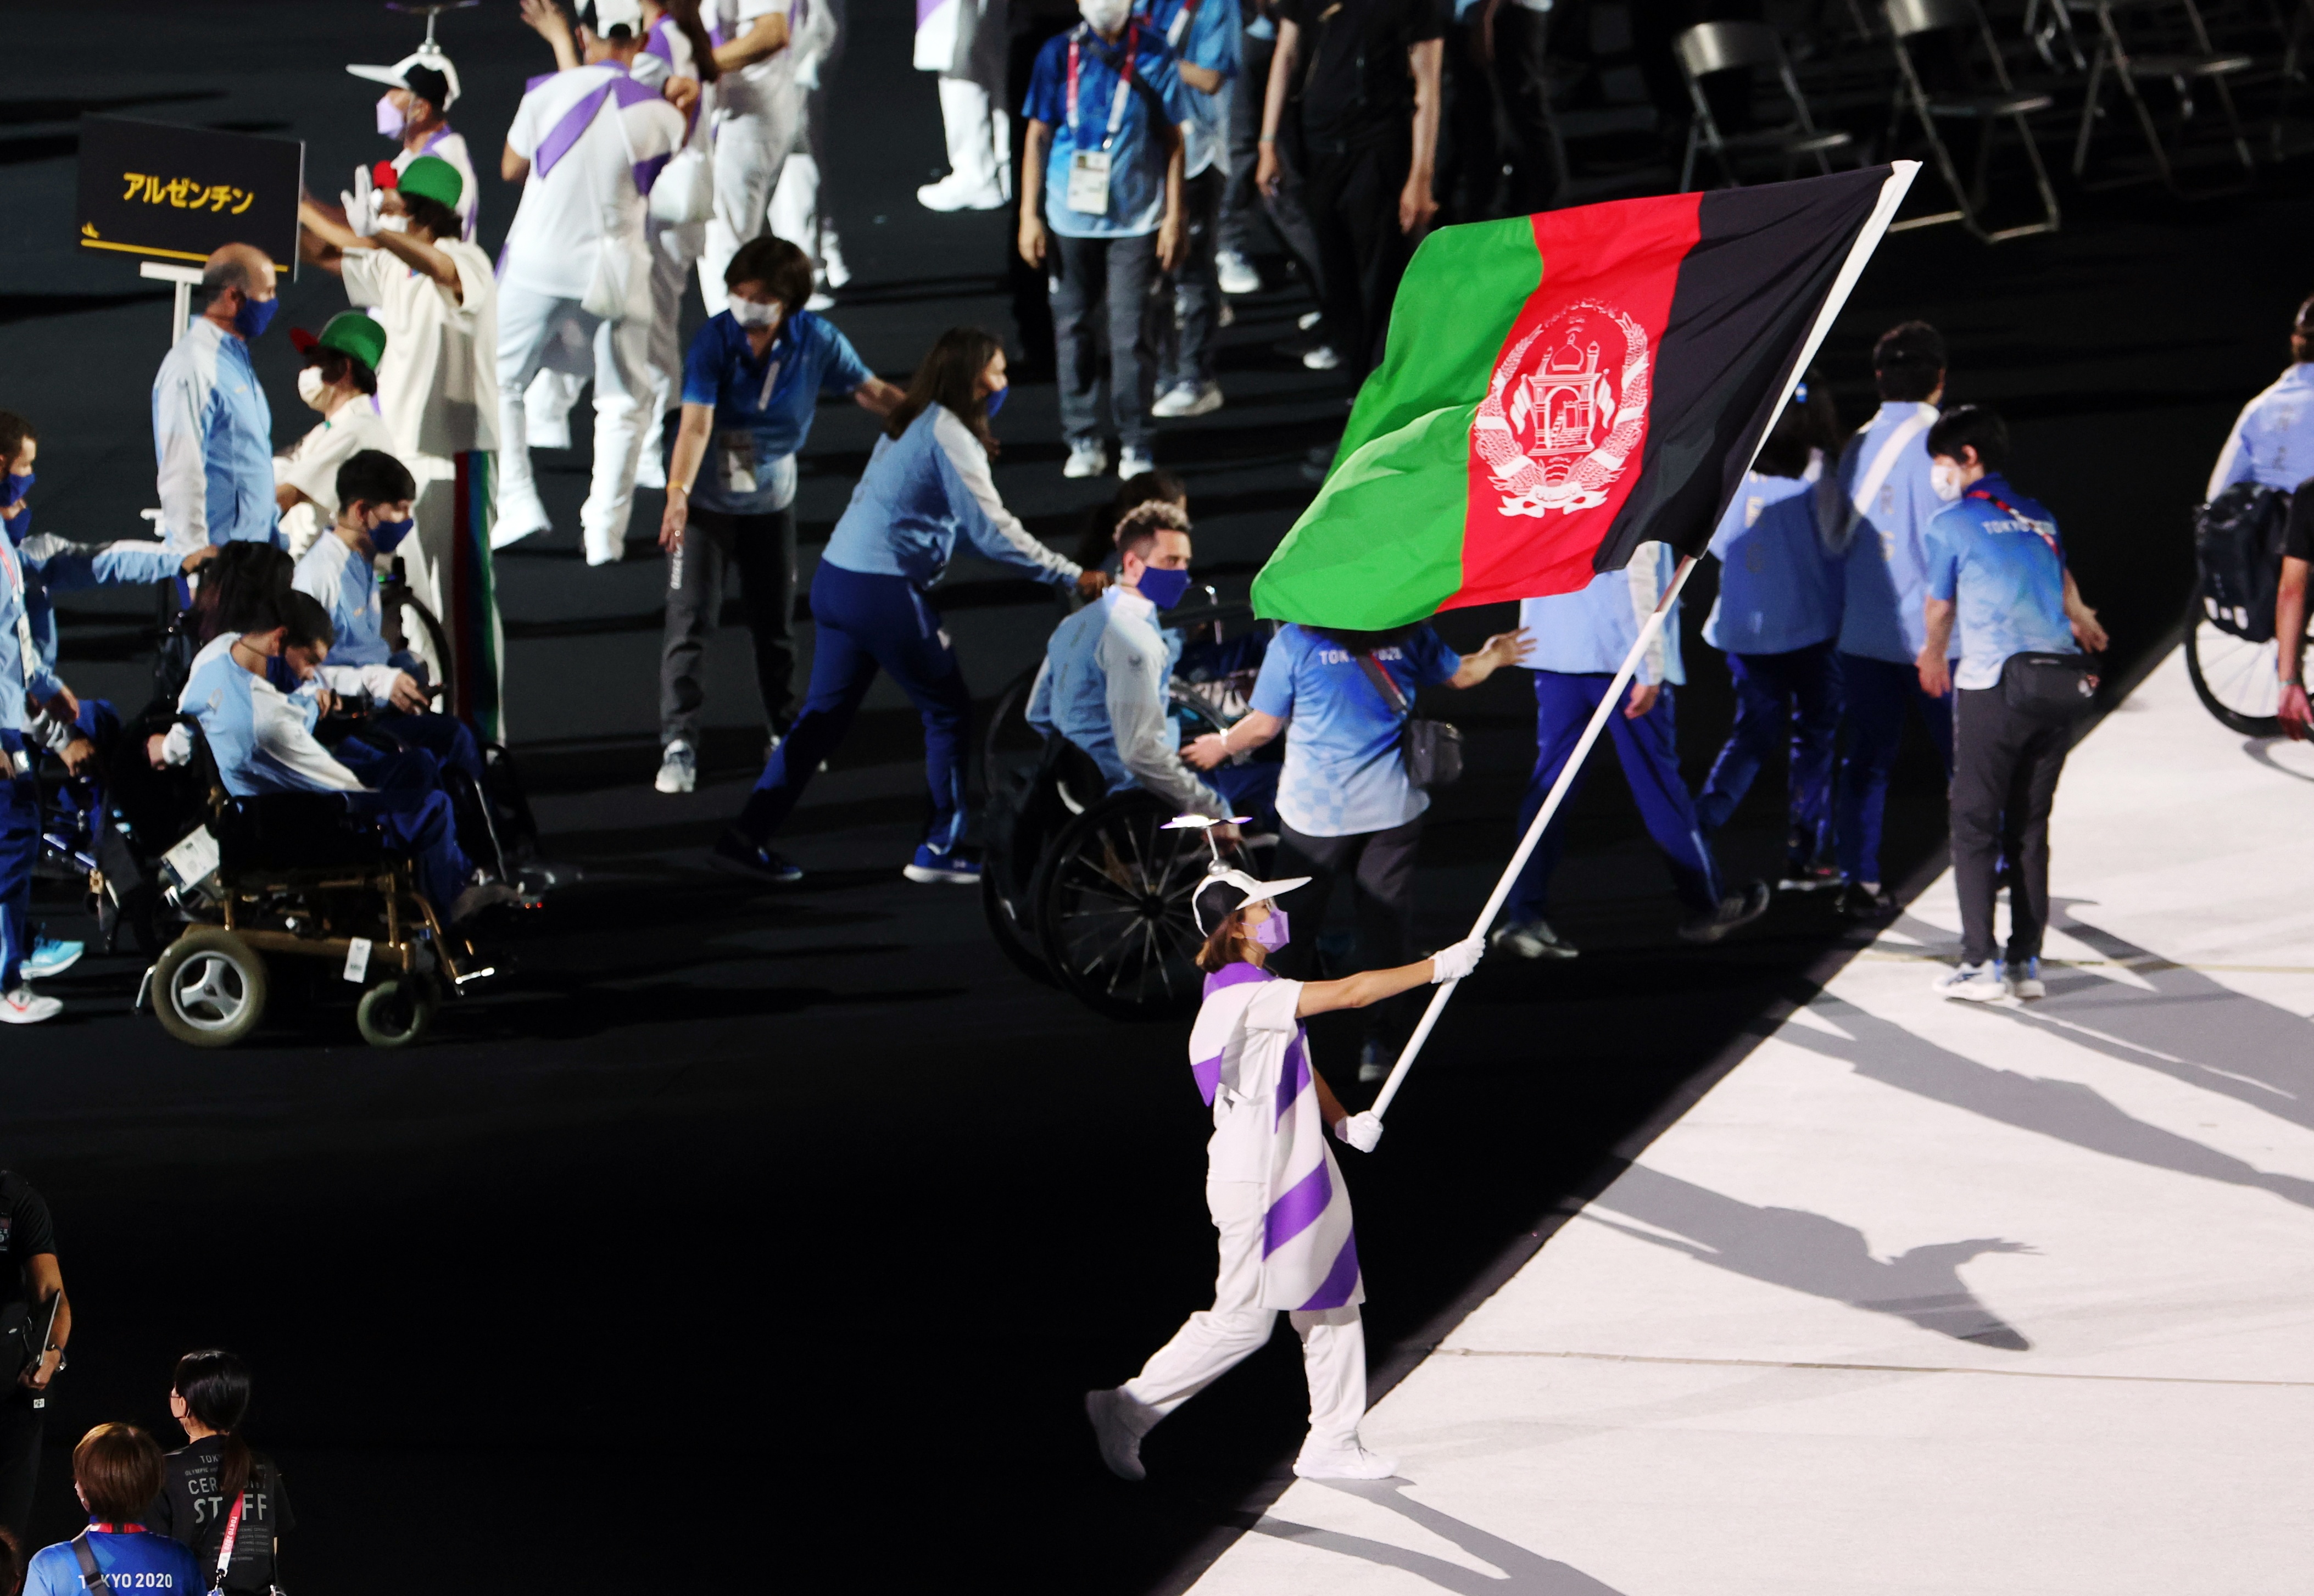 कोई एथलीट नहीं हैं, लेकिन पैरालिंपिक में अफगान झंडा फहराया गया